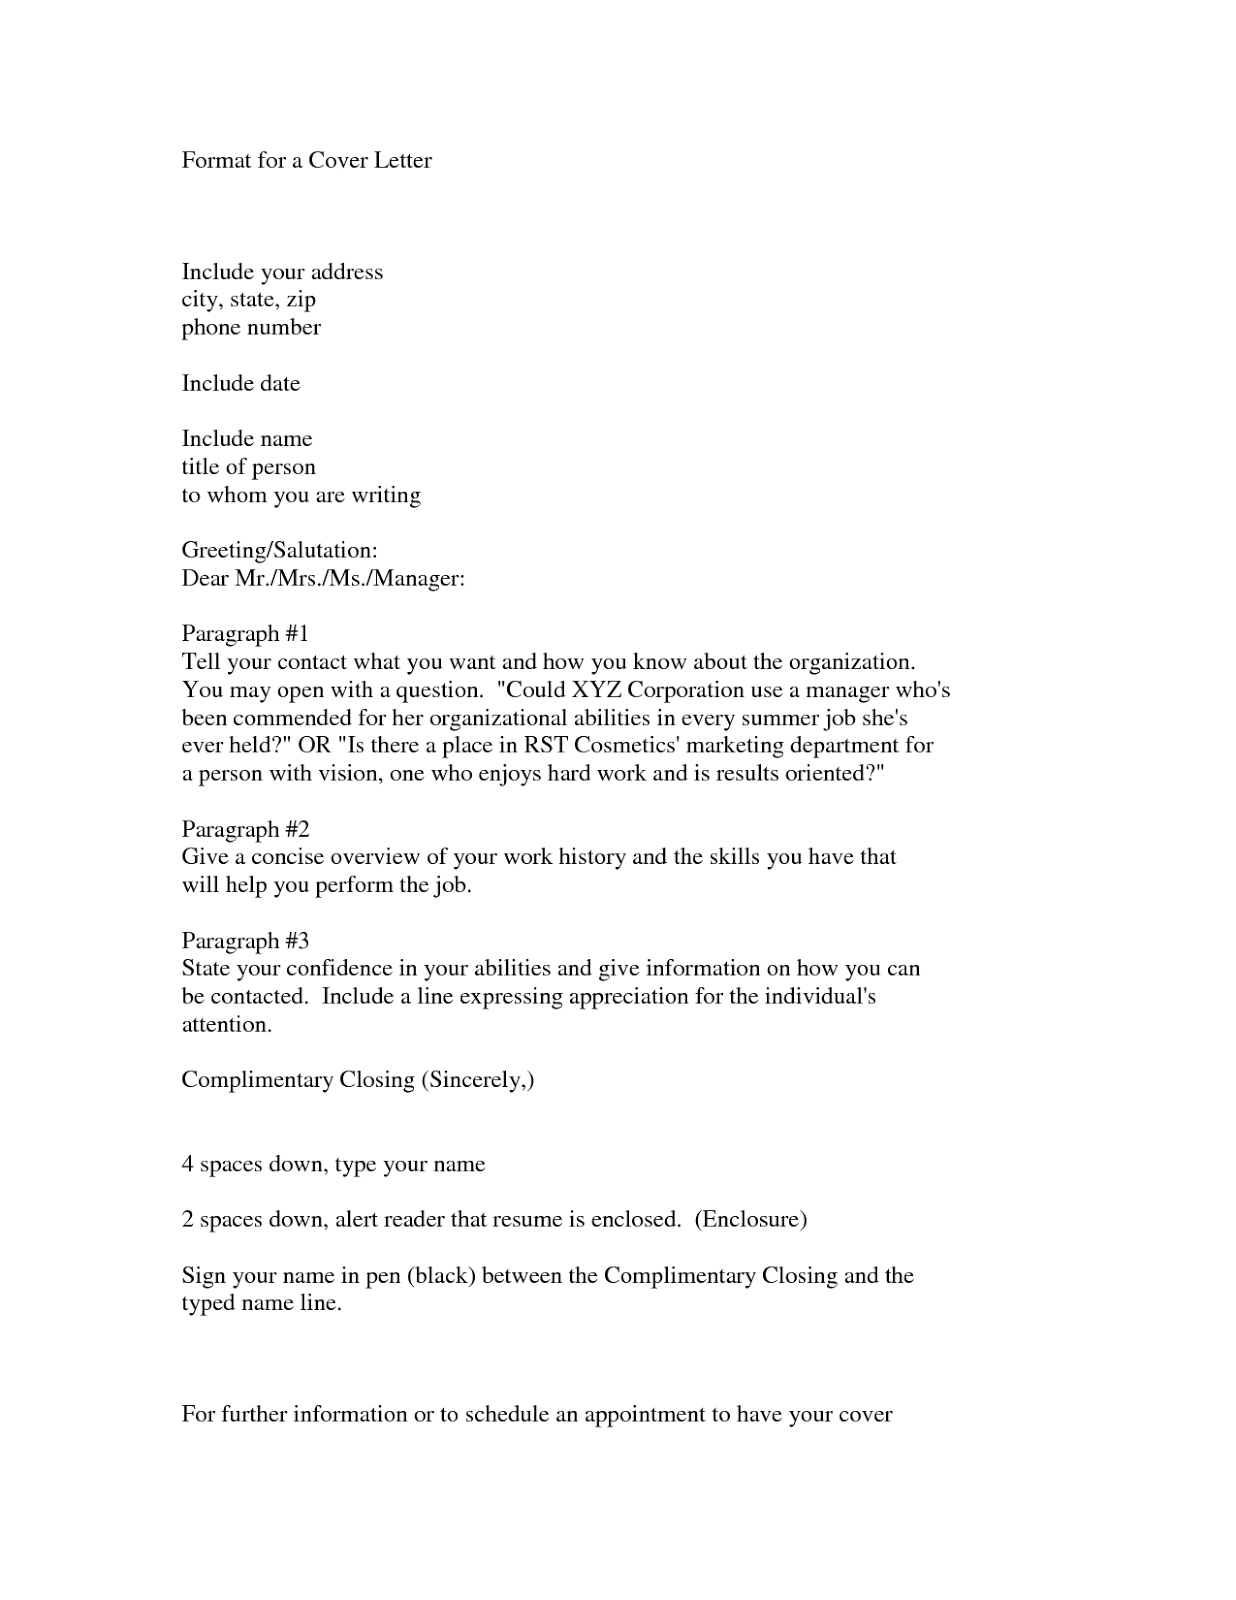 Cover letter for internal job position